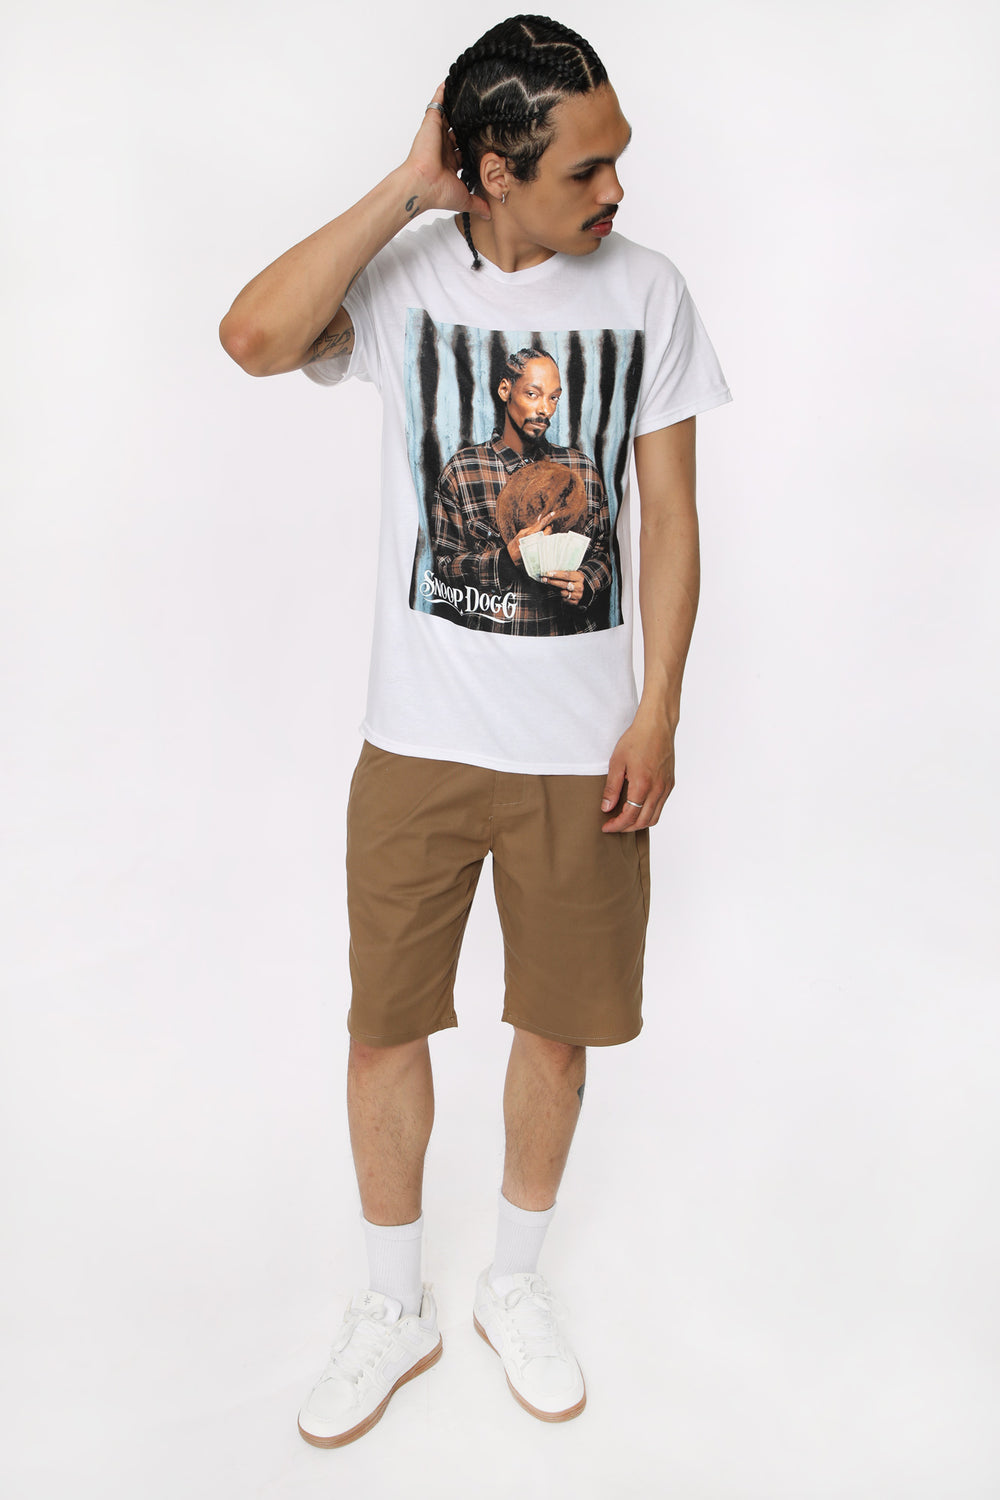 T-Shirt Imprimé Snoop Dogg Homme T-Shirt Imprimé Snoop Dogg Homme